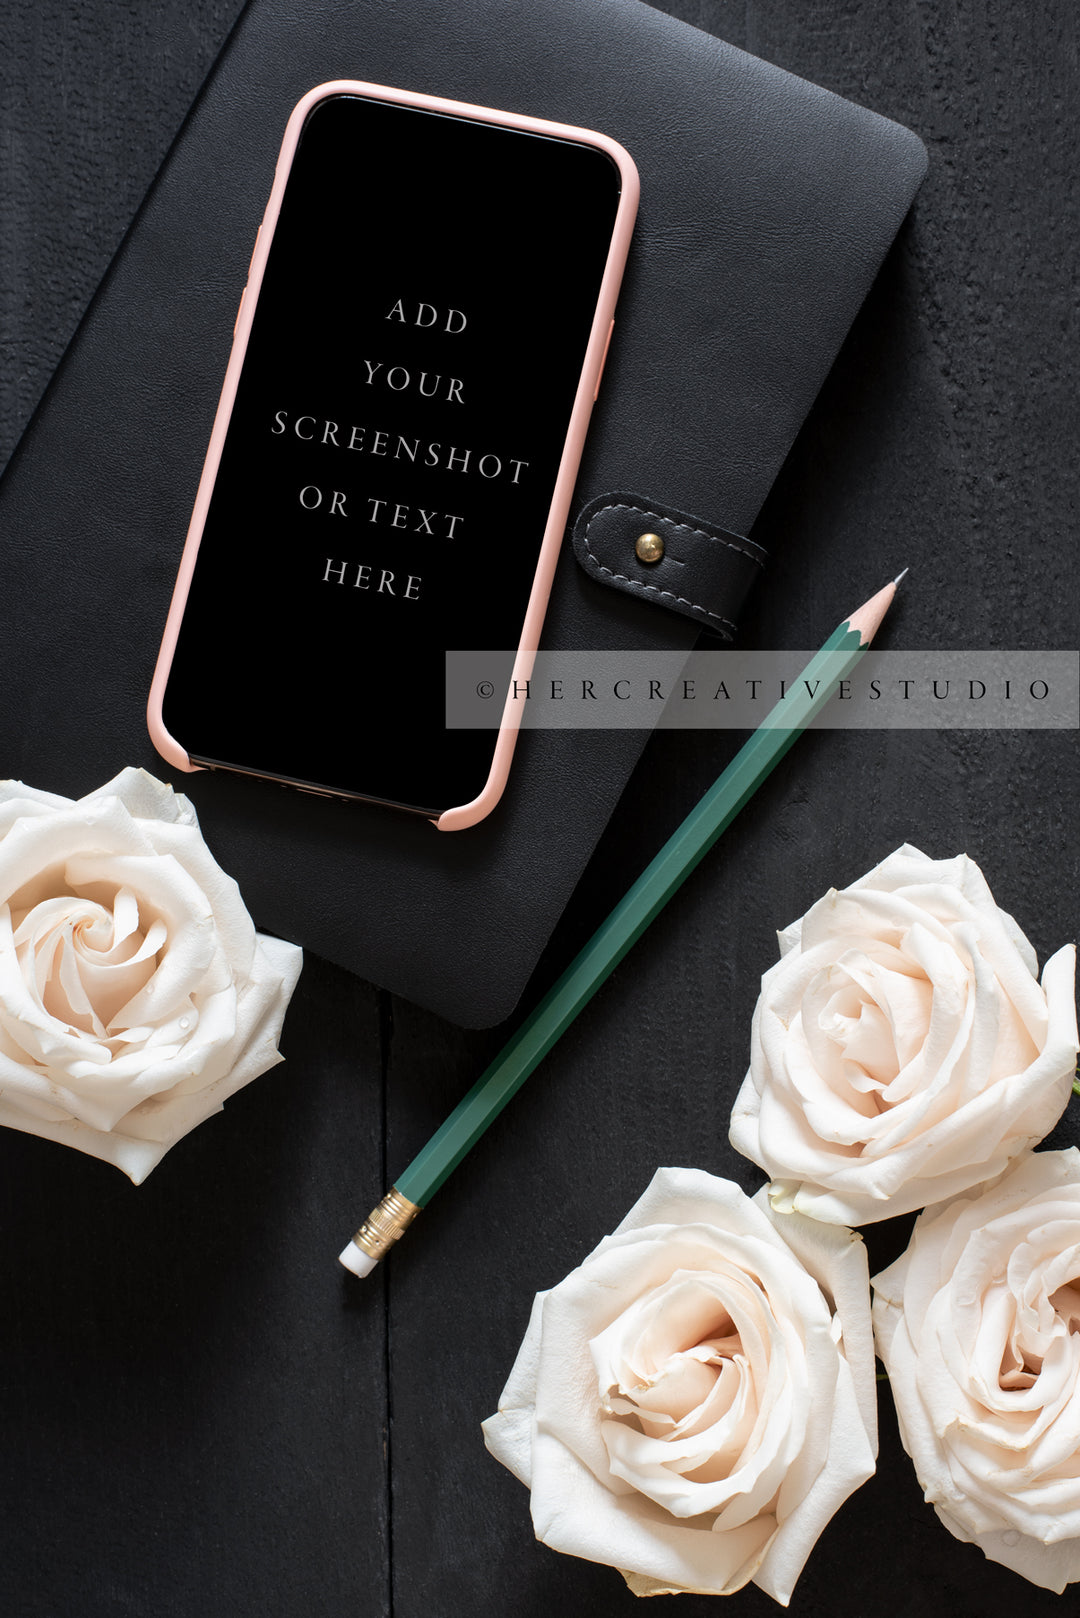 Smartphone, Roses & Pencil on Black Desk